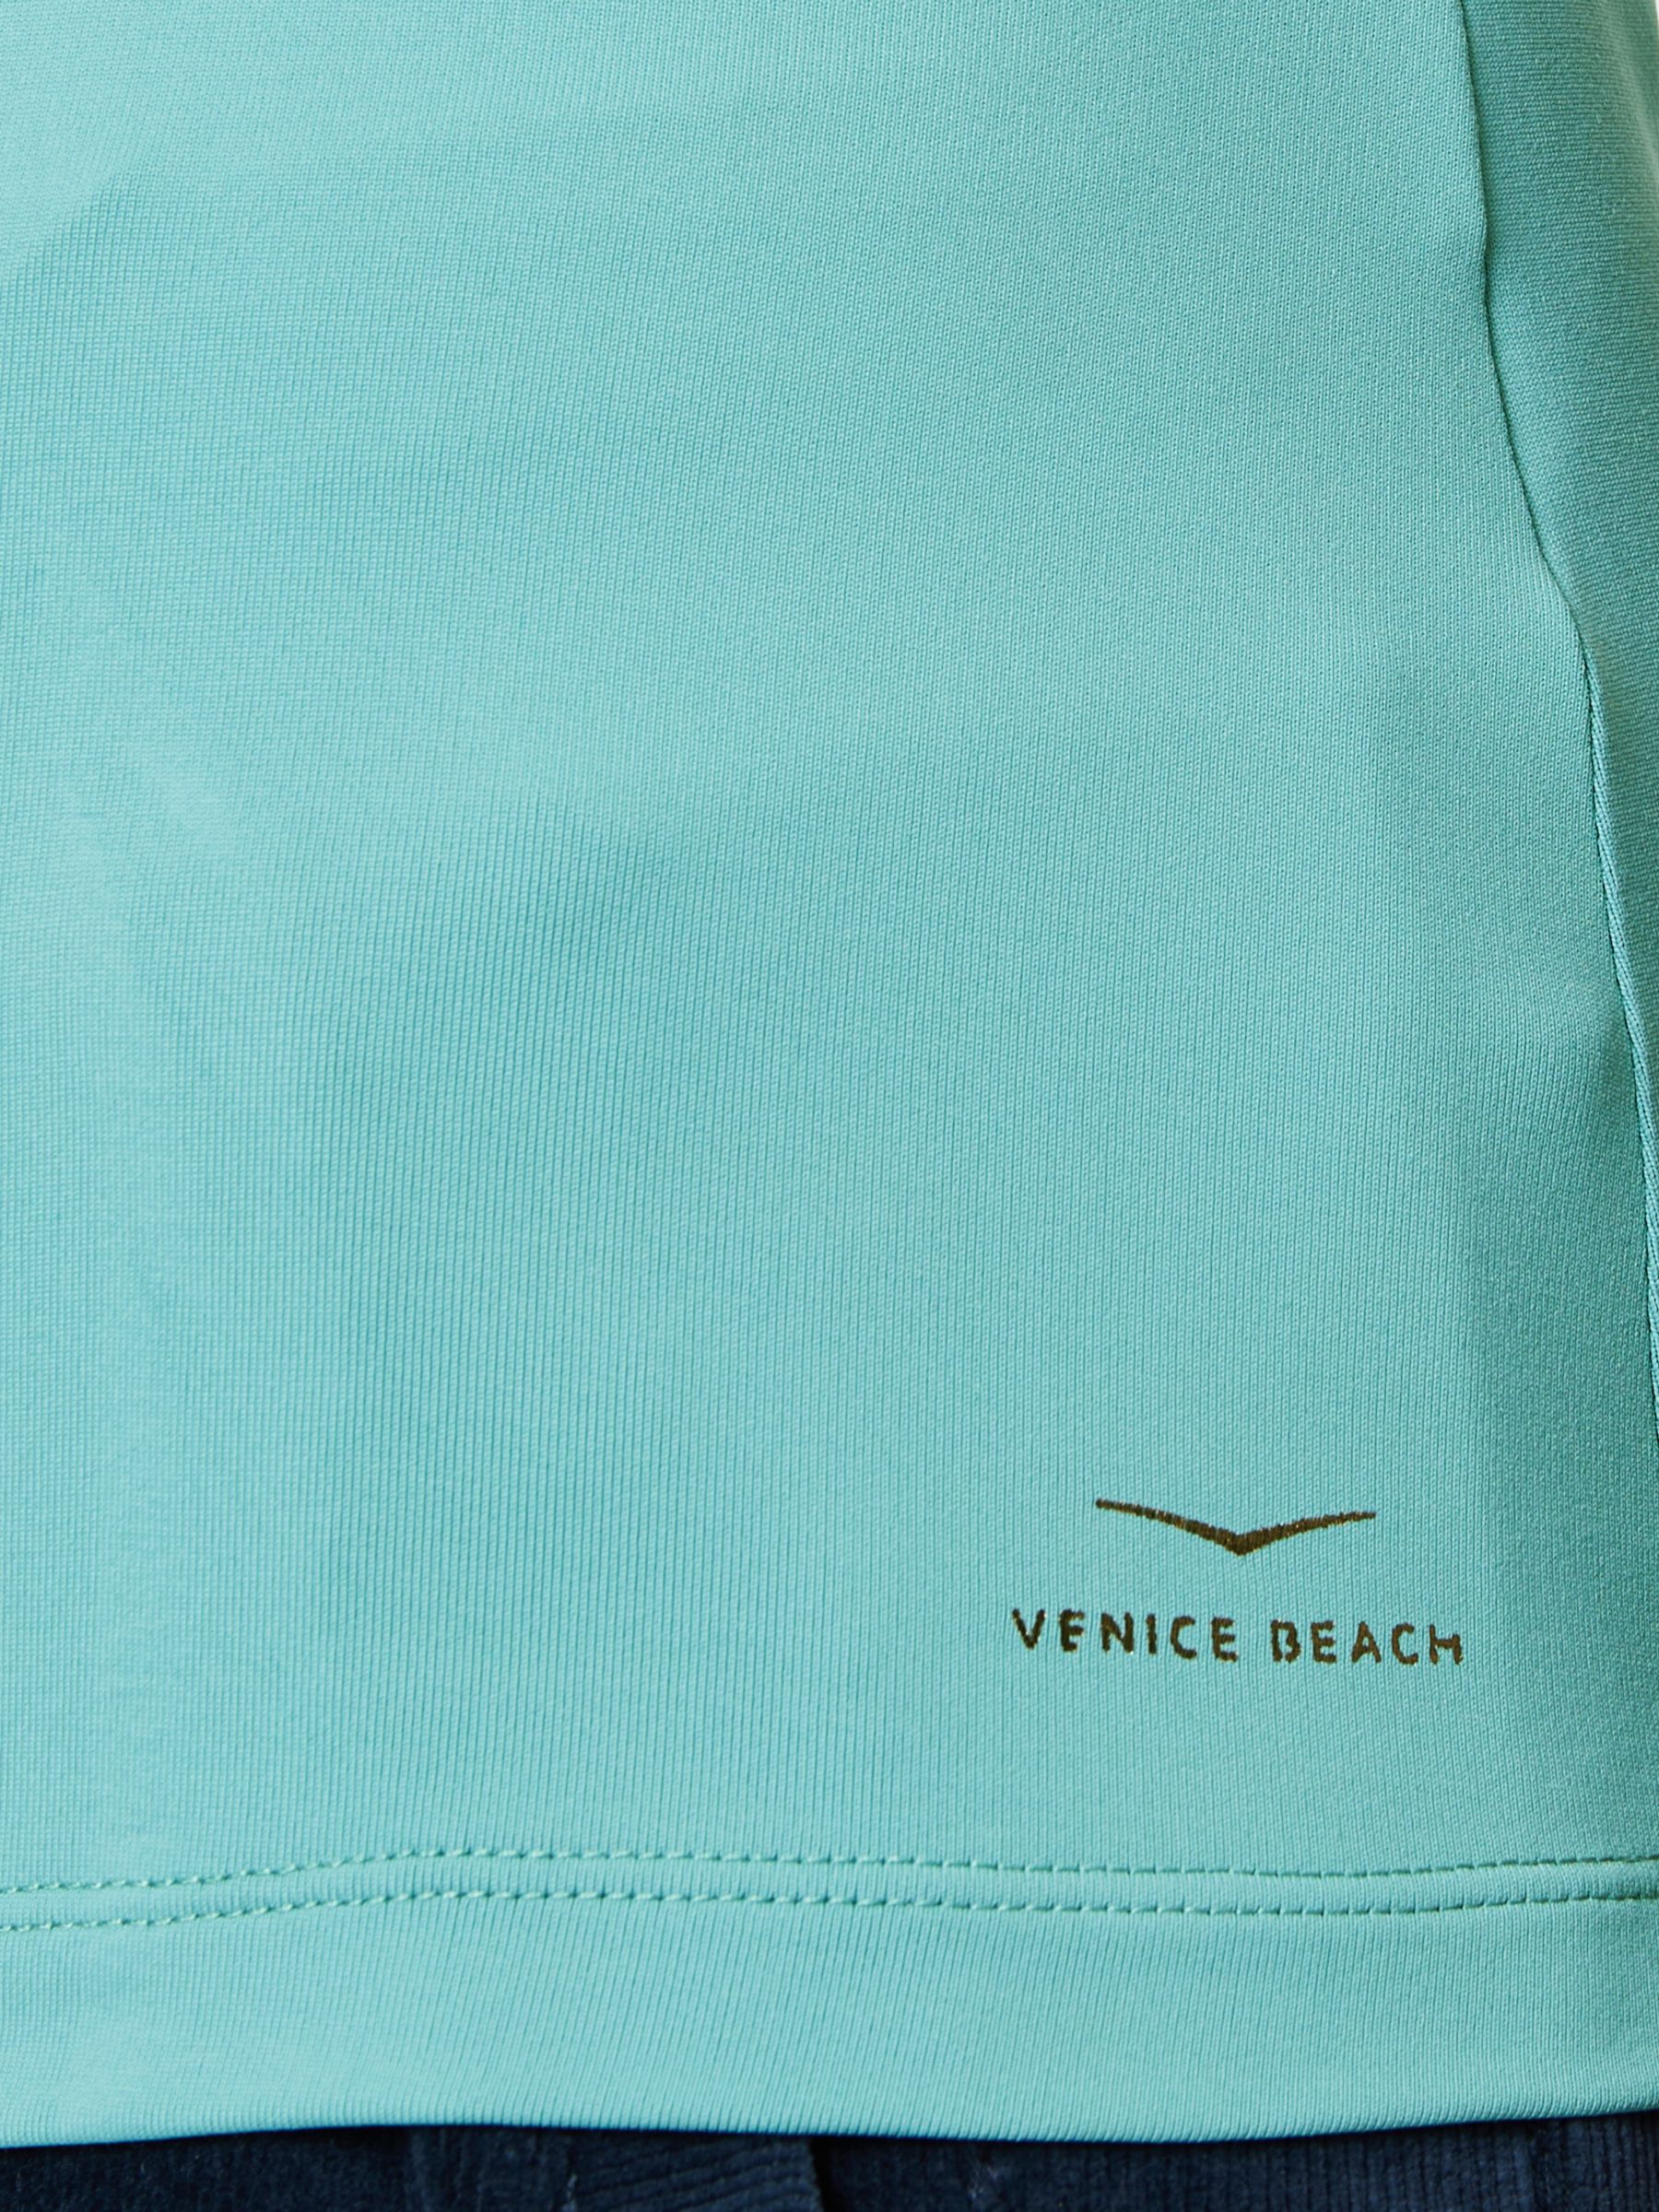 Venice Beach Nimah Gym Top, Agave, XS